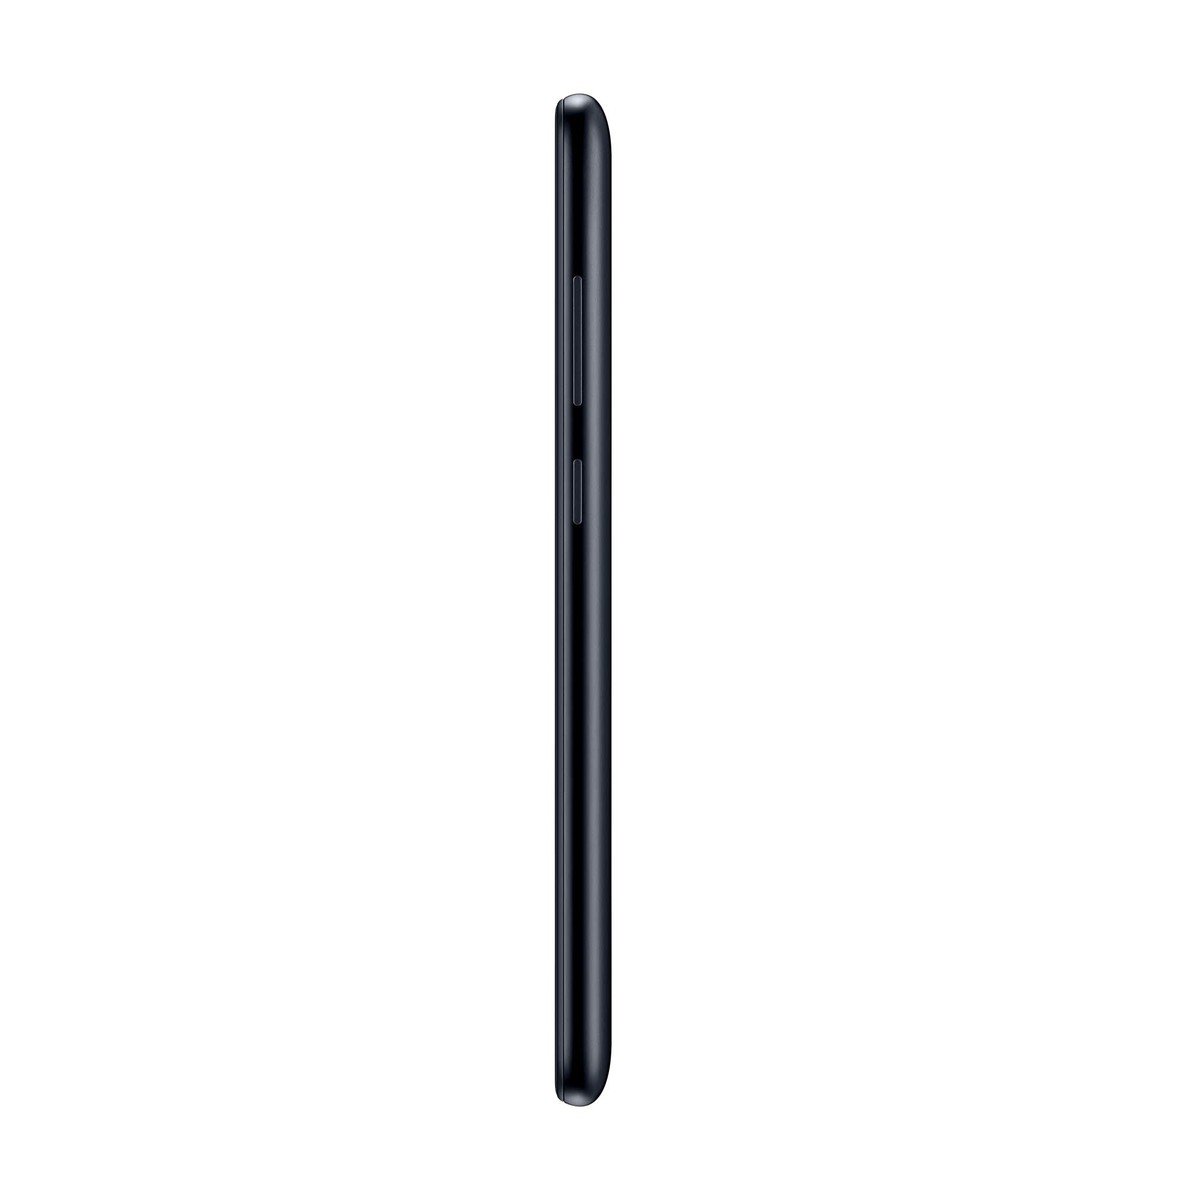 Samsung Galaxy M11 -SMM115 32GB Black